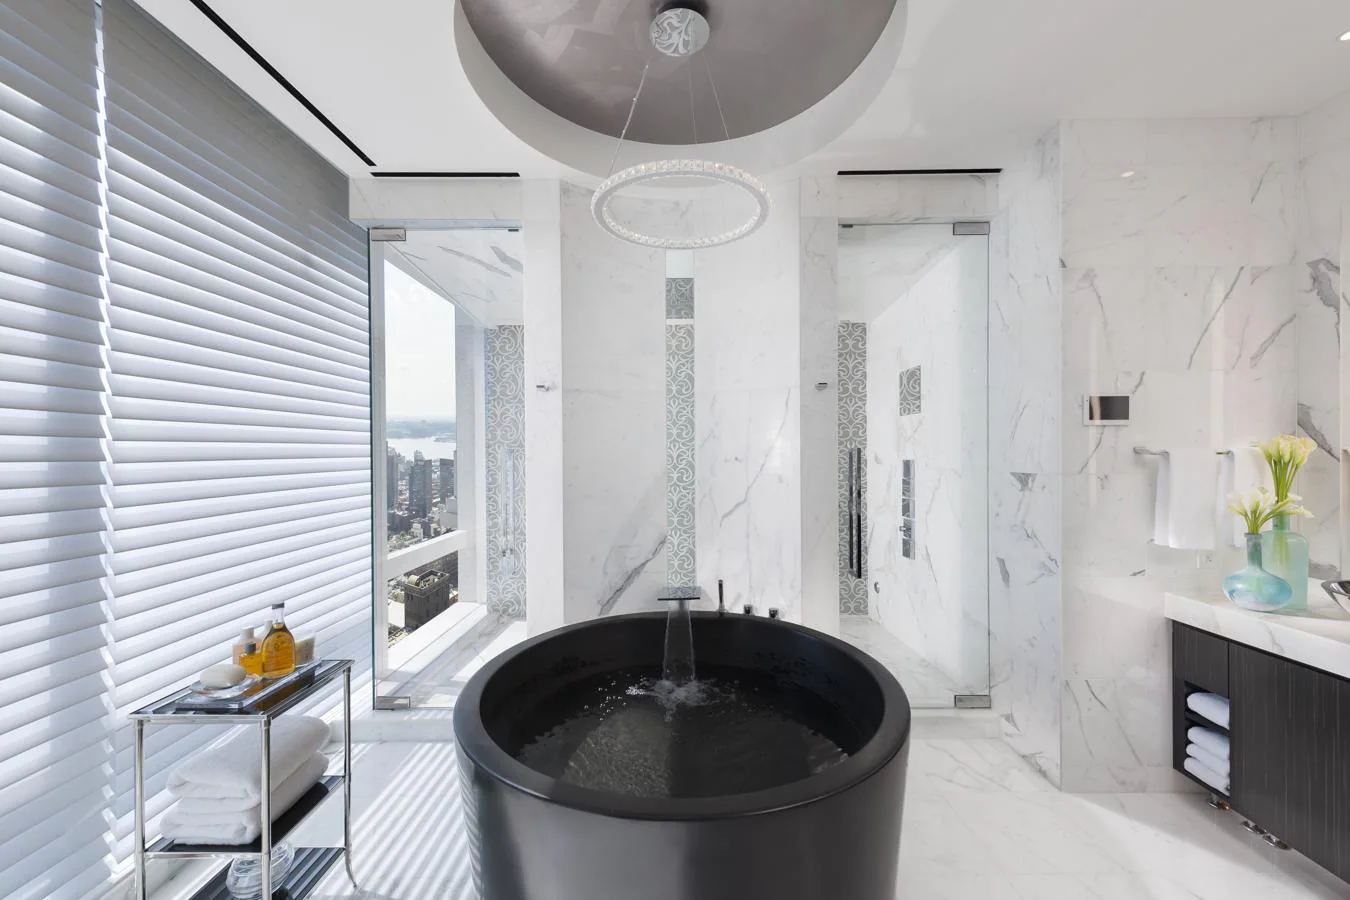 El baño cuenta con un diseño sofisticado y elegante al que no le falta ningún tipo de detalle.